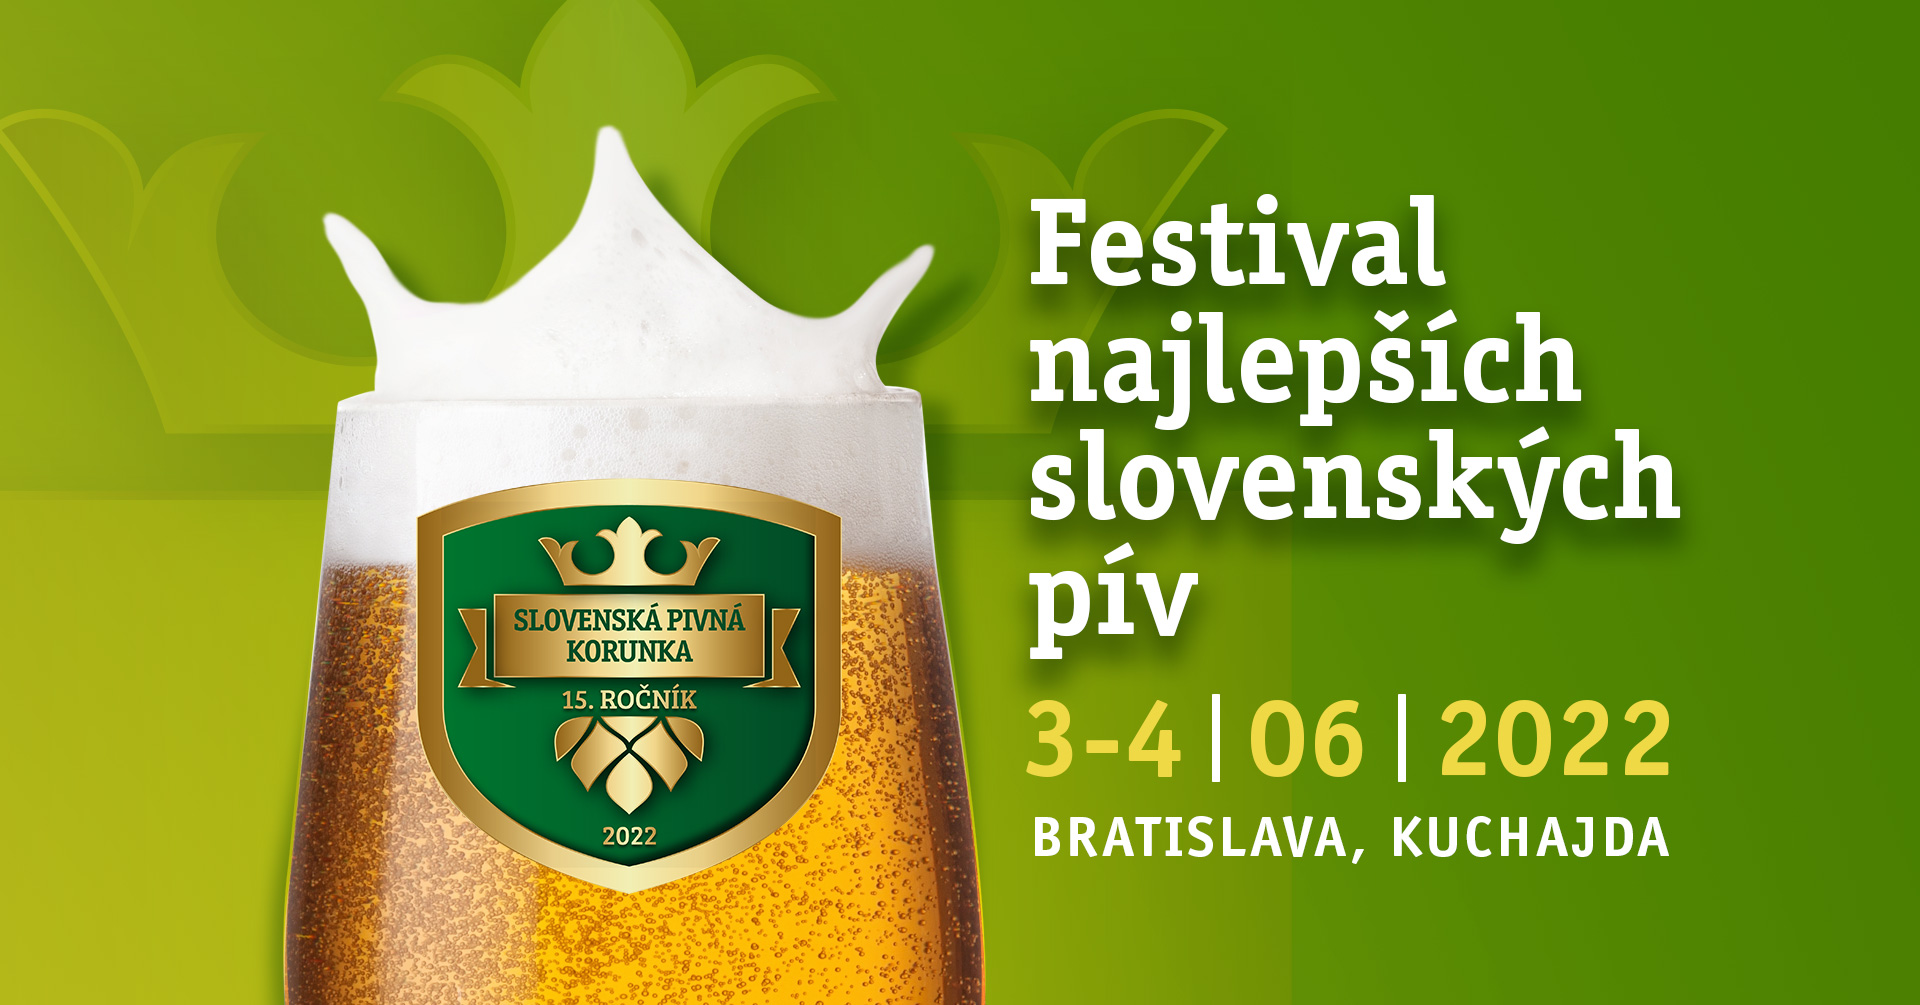 Pivn festival - Slovensk pivn korunka 2022 Bratislava - 15. ronk